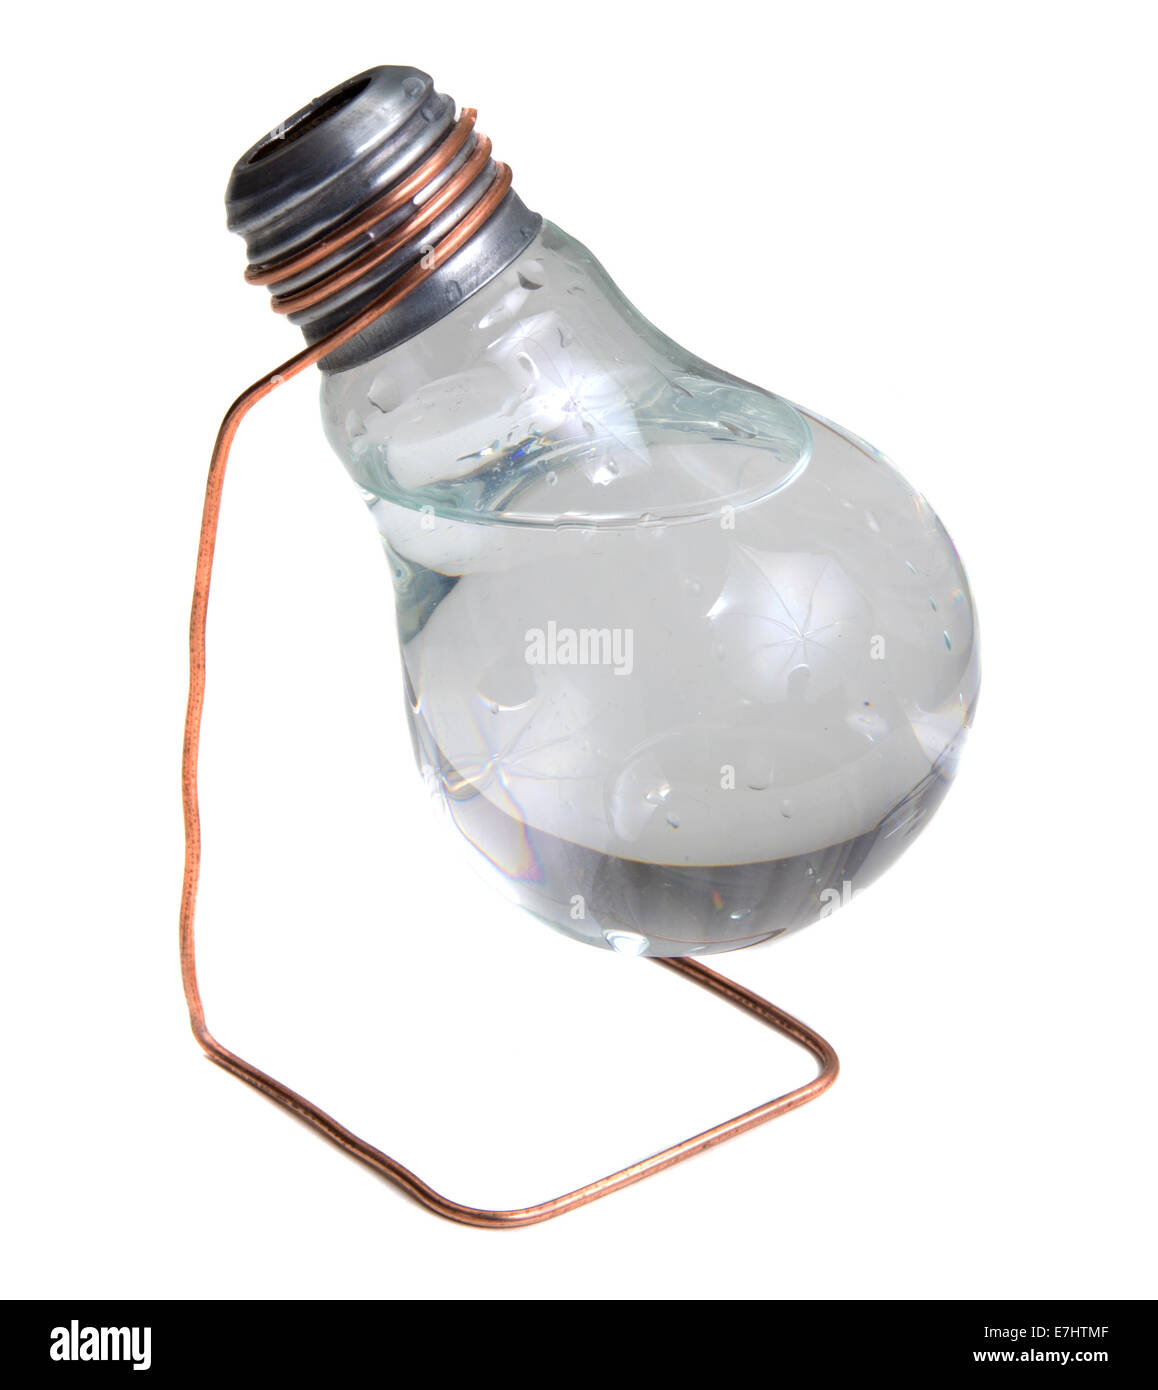 À partir de la Vase ampoule électrique isolé avec de l'eau over white background Banque D'Images